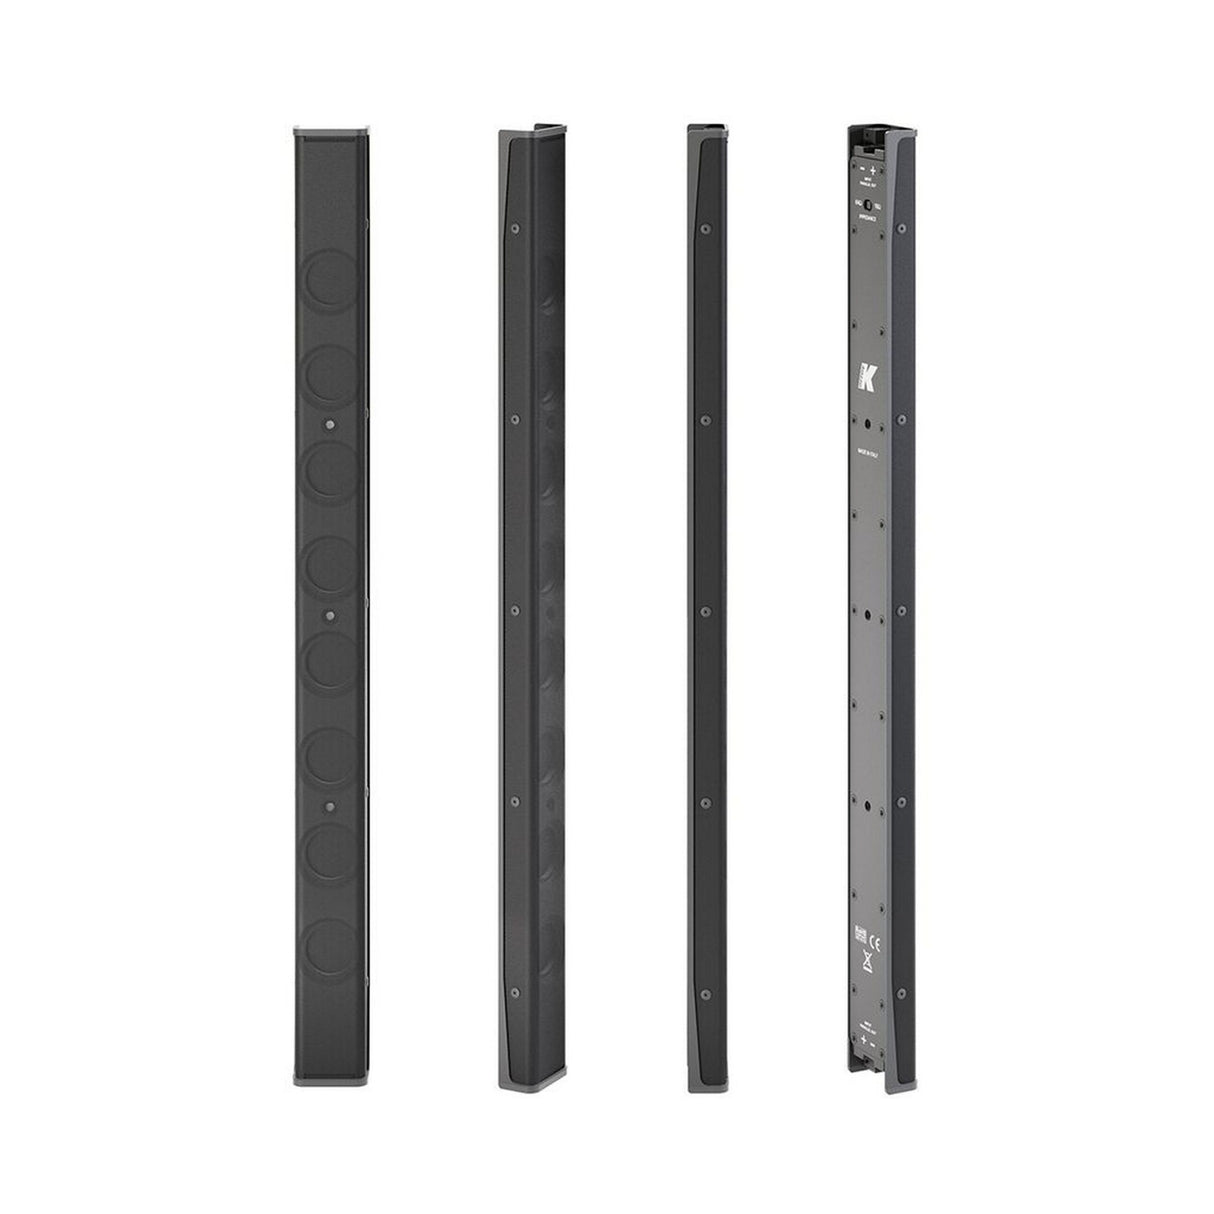 K-Array Vyper-KV52 I Ultra-Flat Aluminum Line Array Element with 8 x 1-Inch Cones, Black